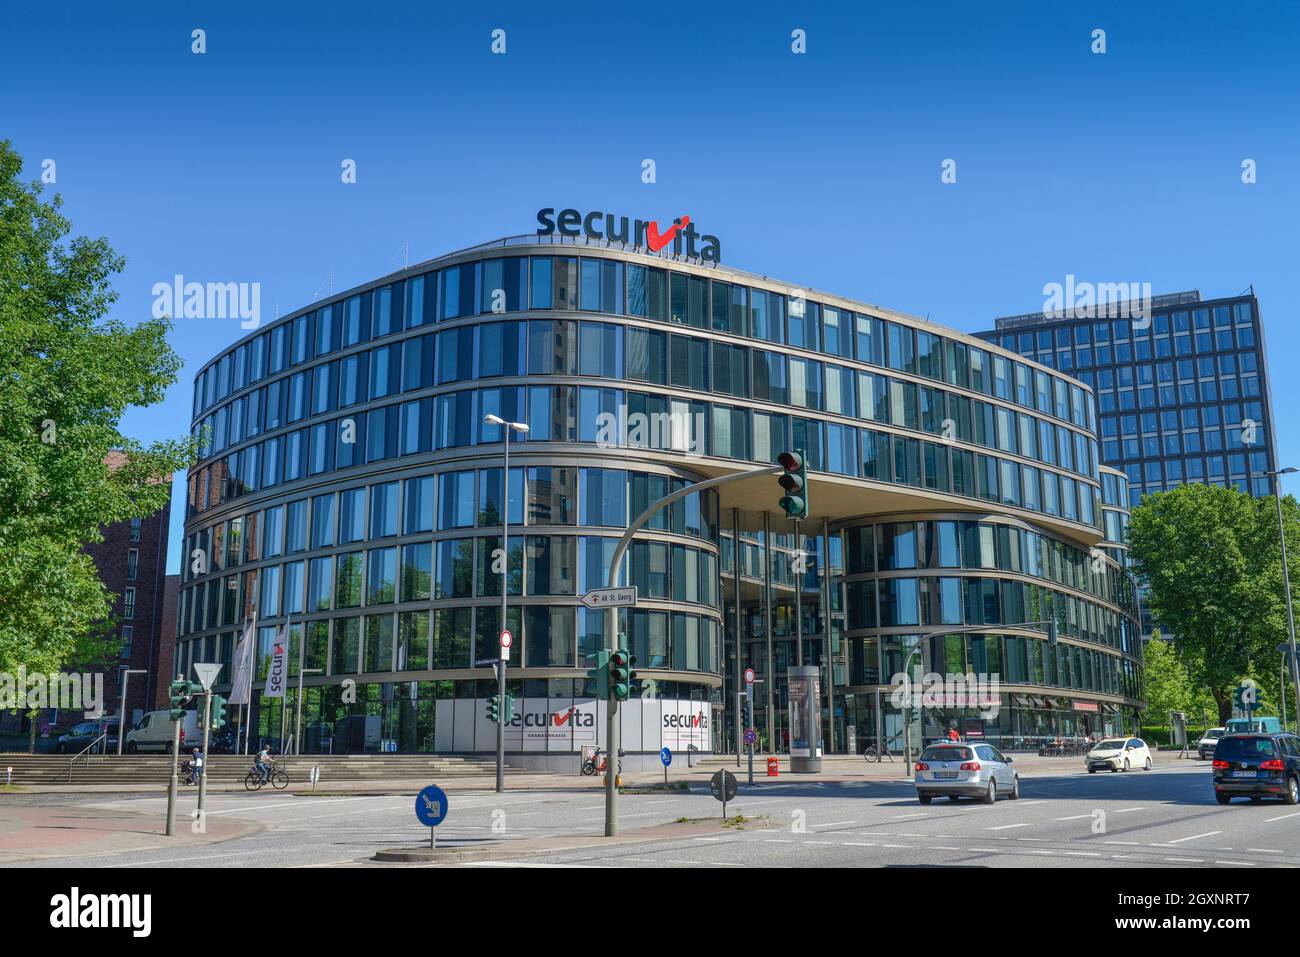 Securvita Krankenkasse, Luebeckertordamm, Hambourg, Allemagne Banque D'Images